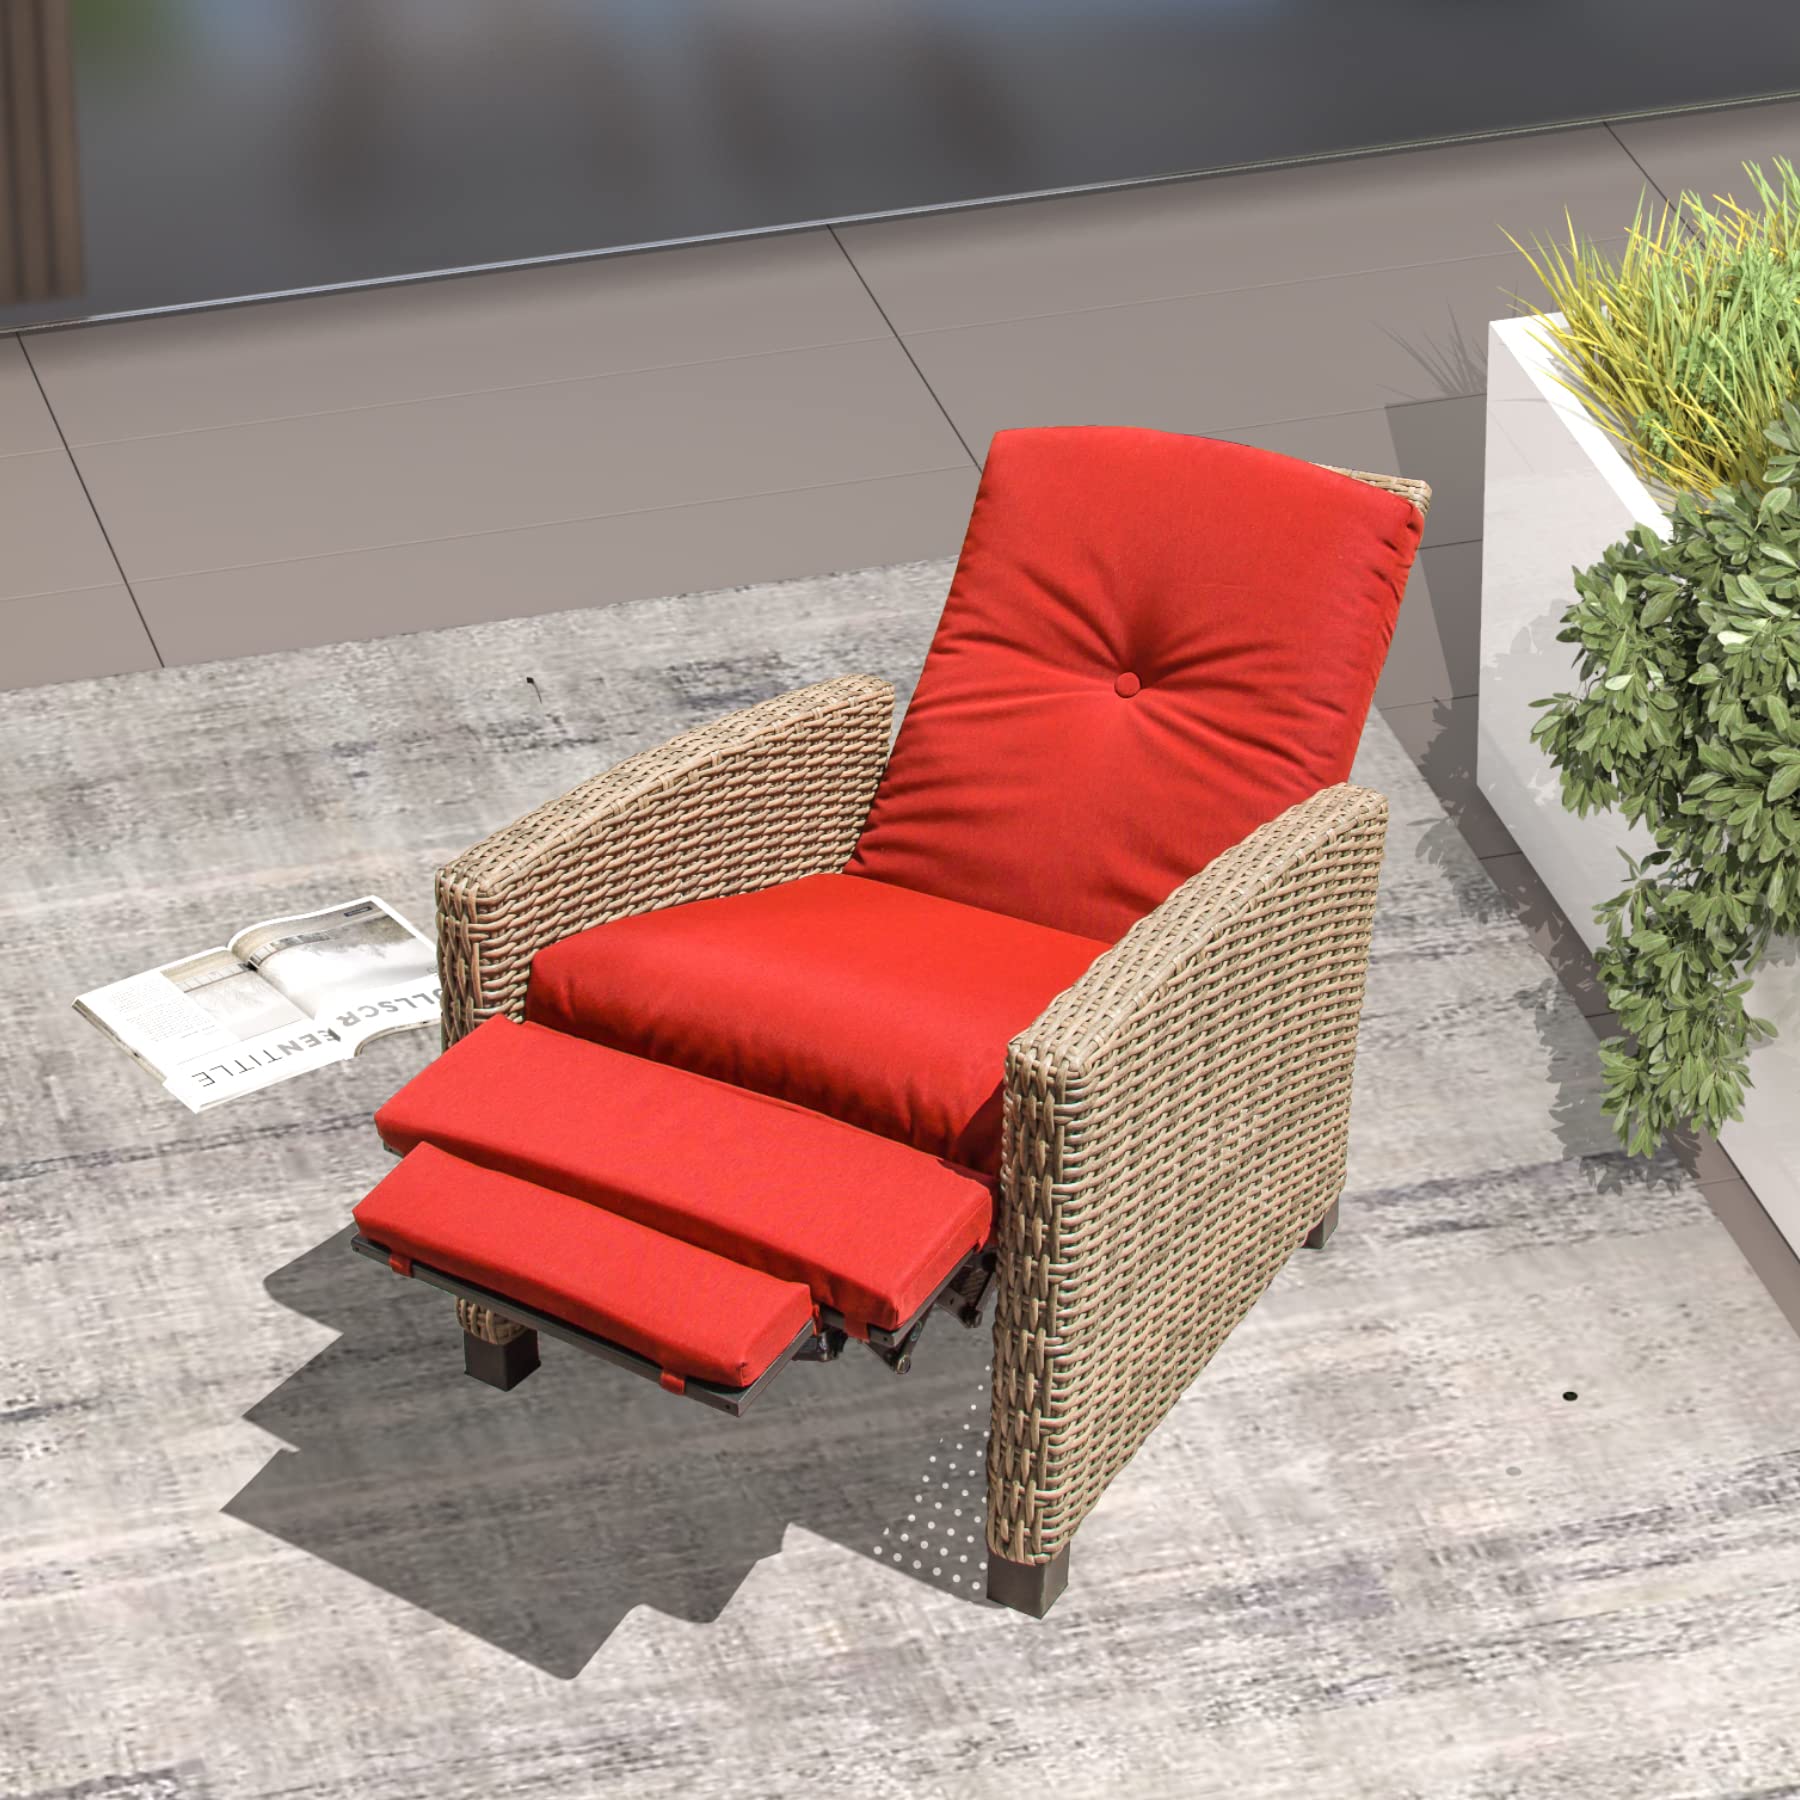 Domi Indoor & Outdoor Recliner, All-Weather Wicker Reclining Patio Chair - image 2 of 8